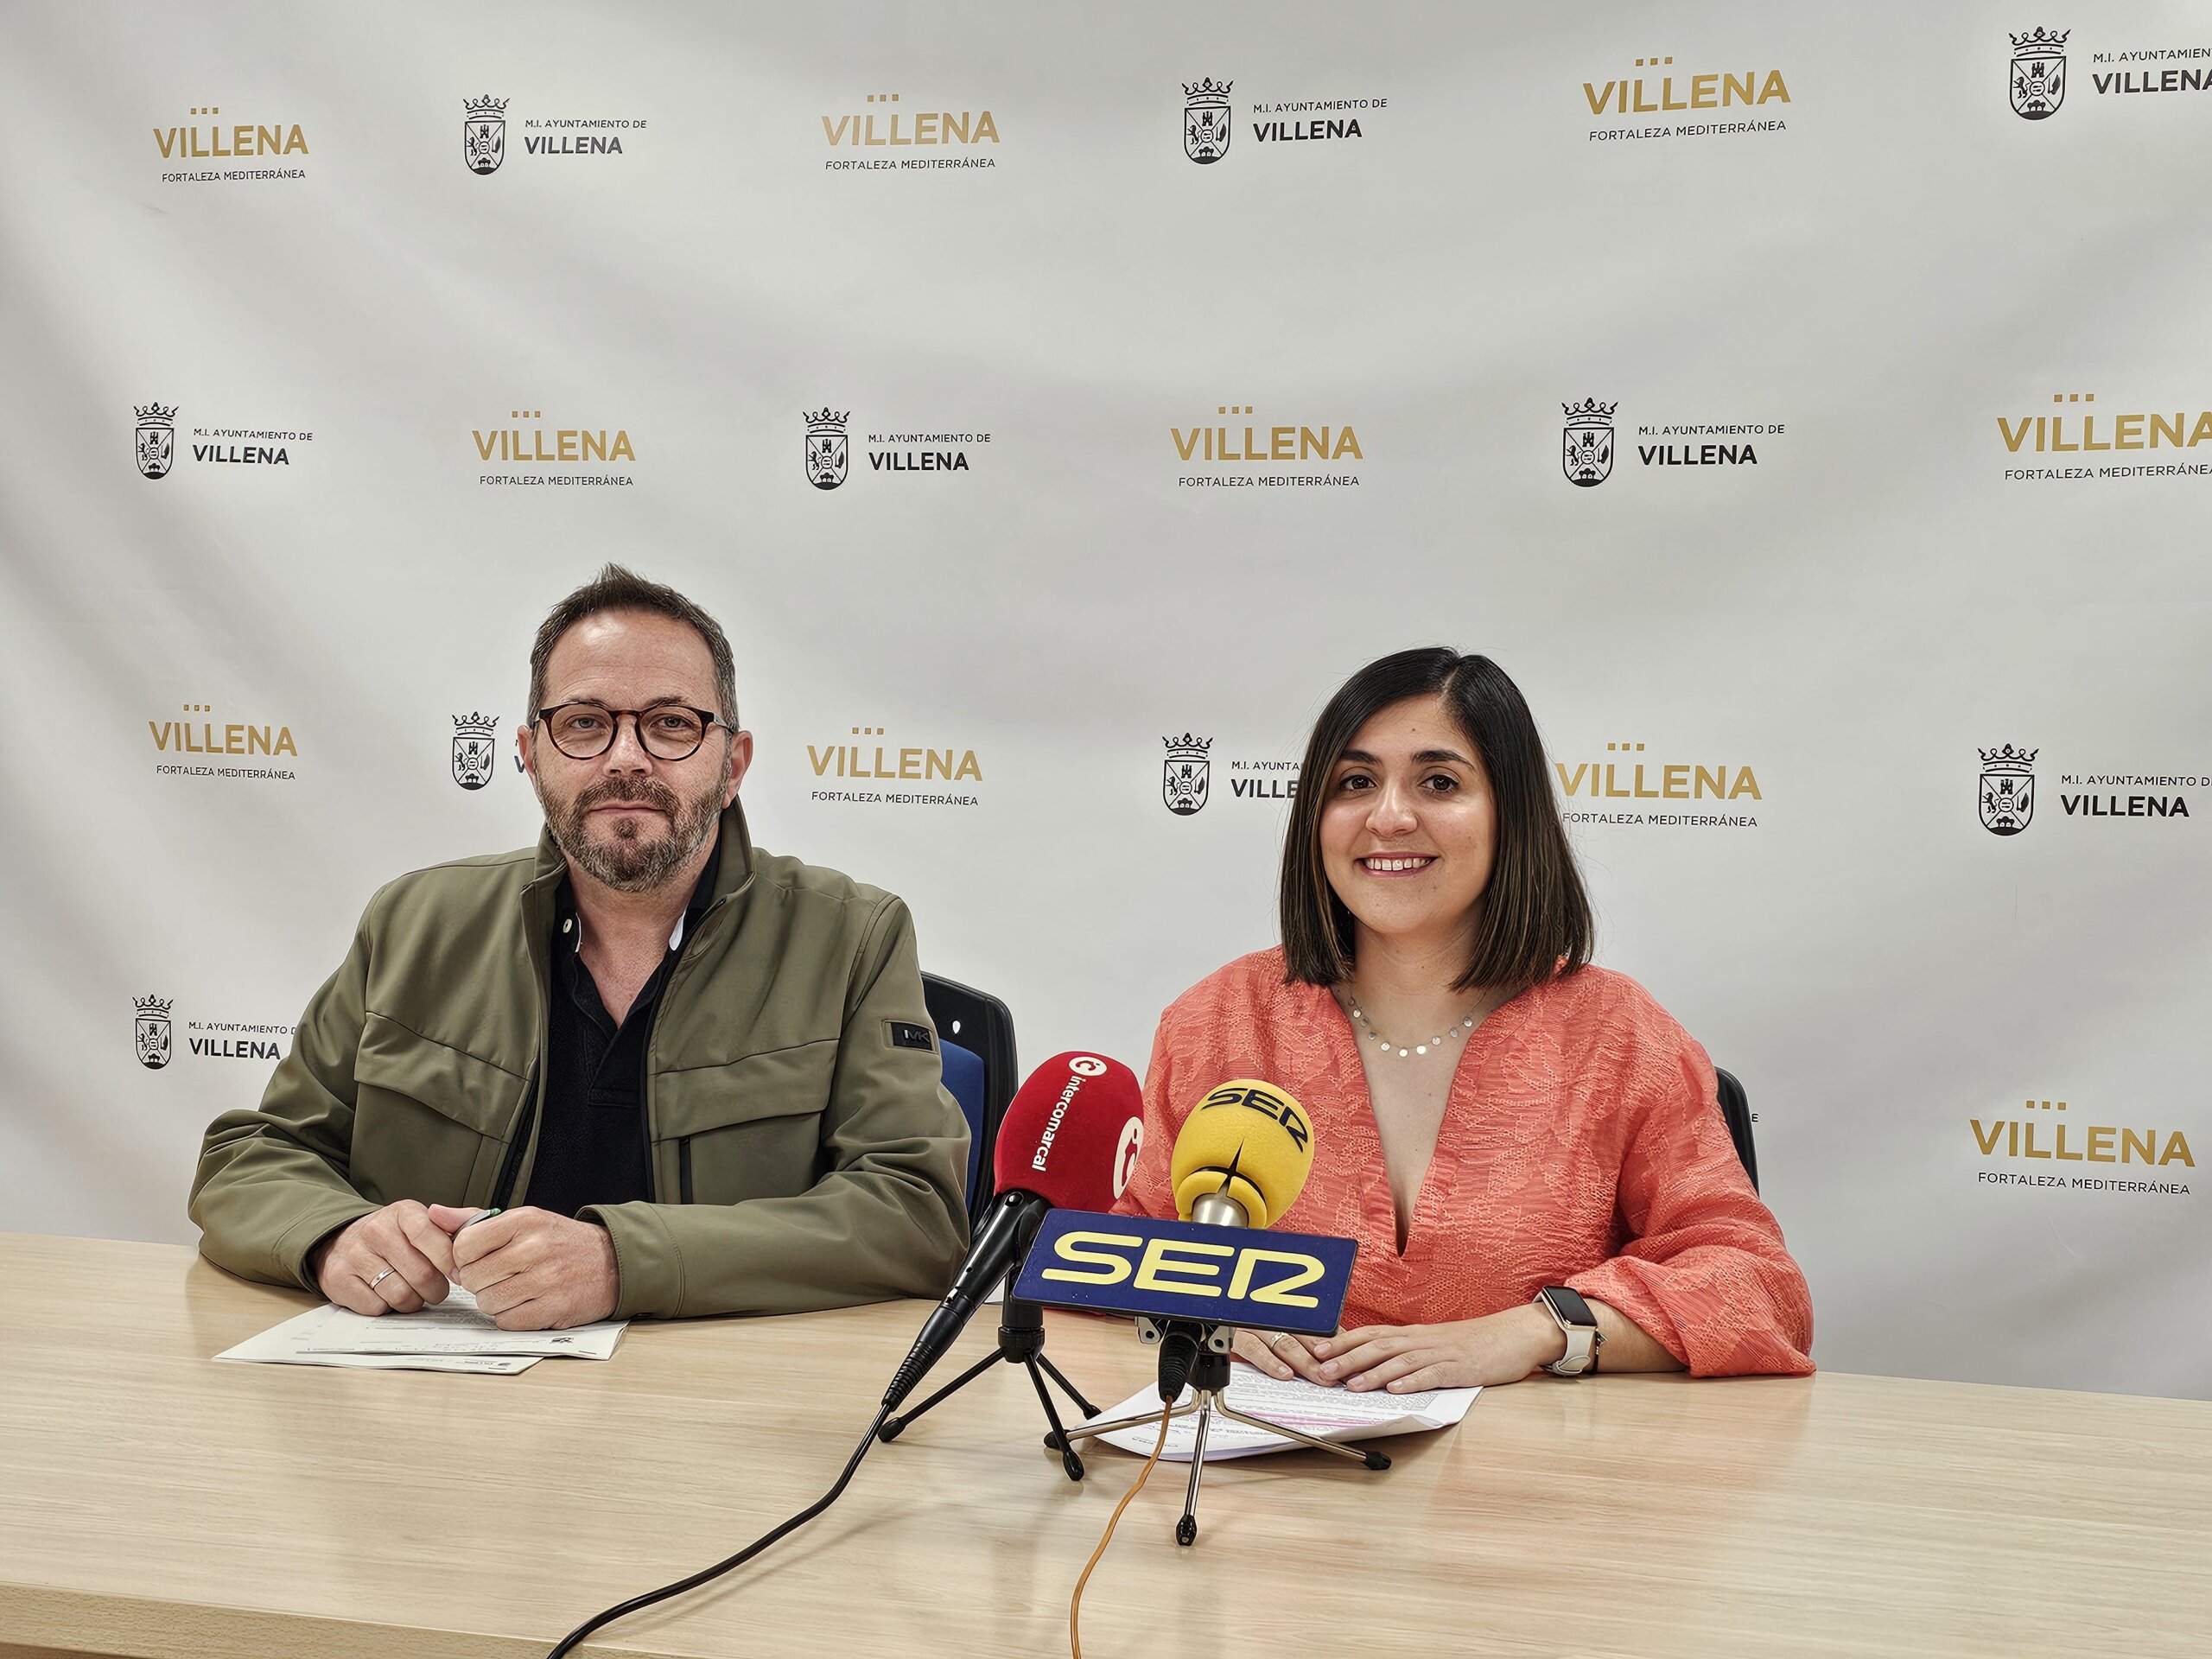  Villena convoca las ayudas a las asociaciones vecinales por un importe total 21.000 euros